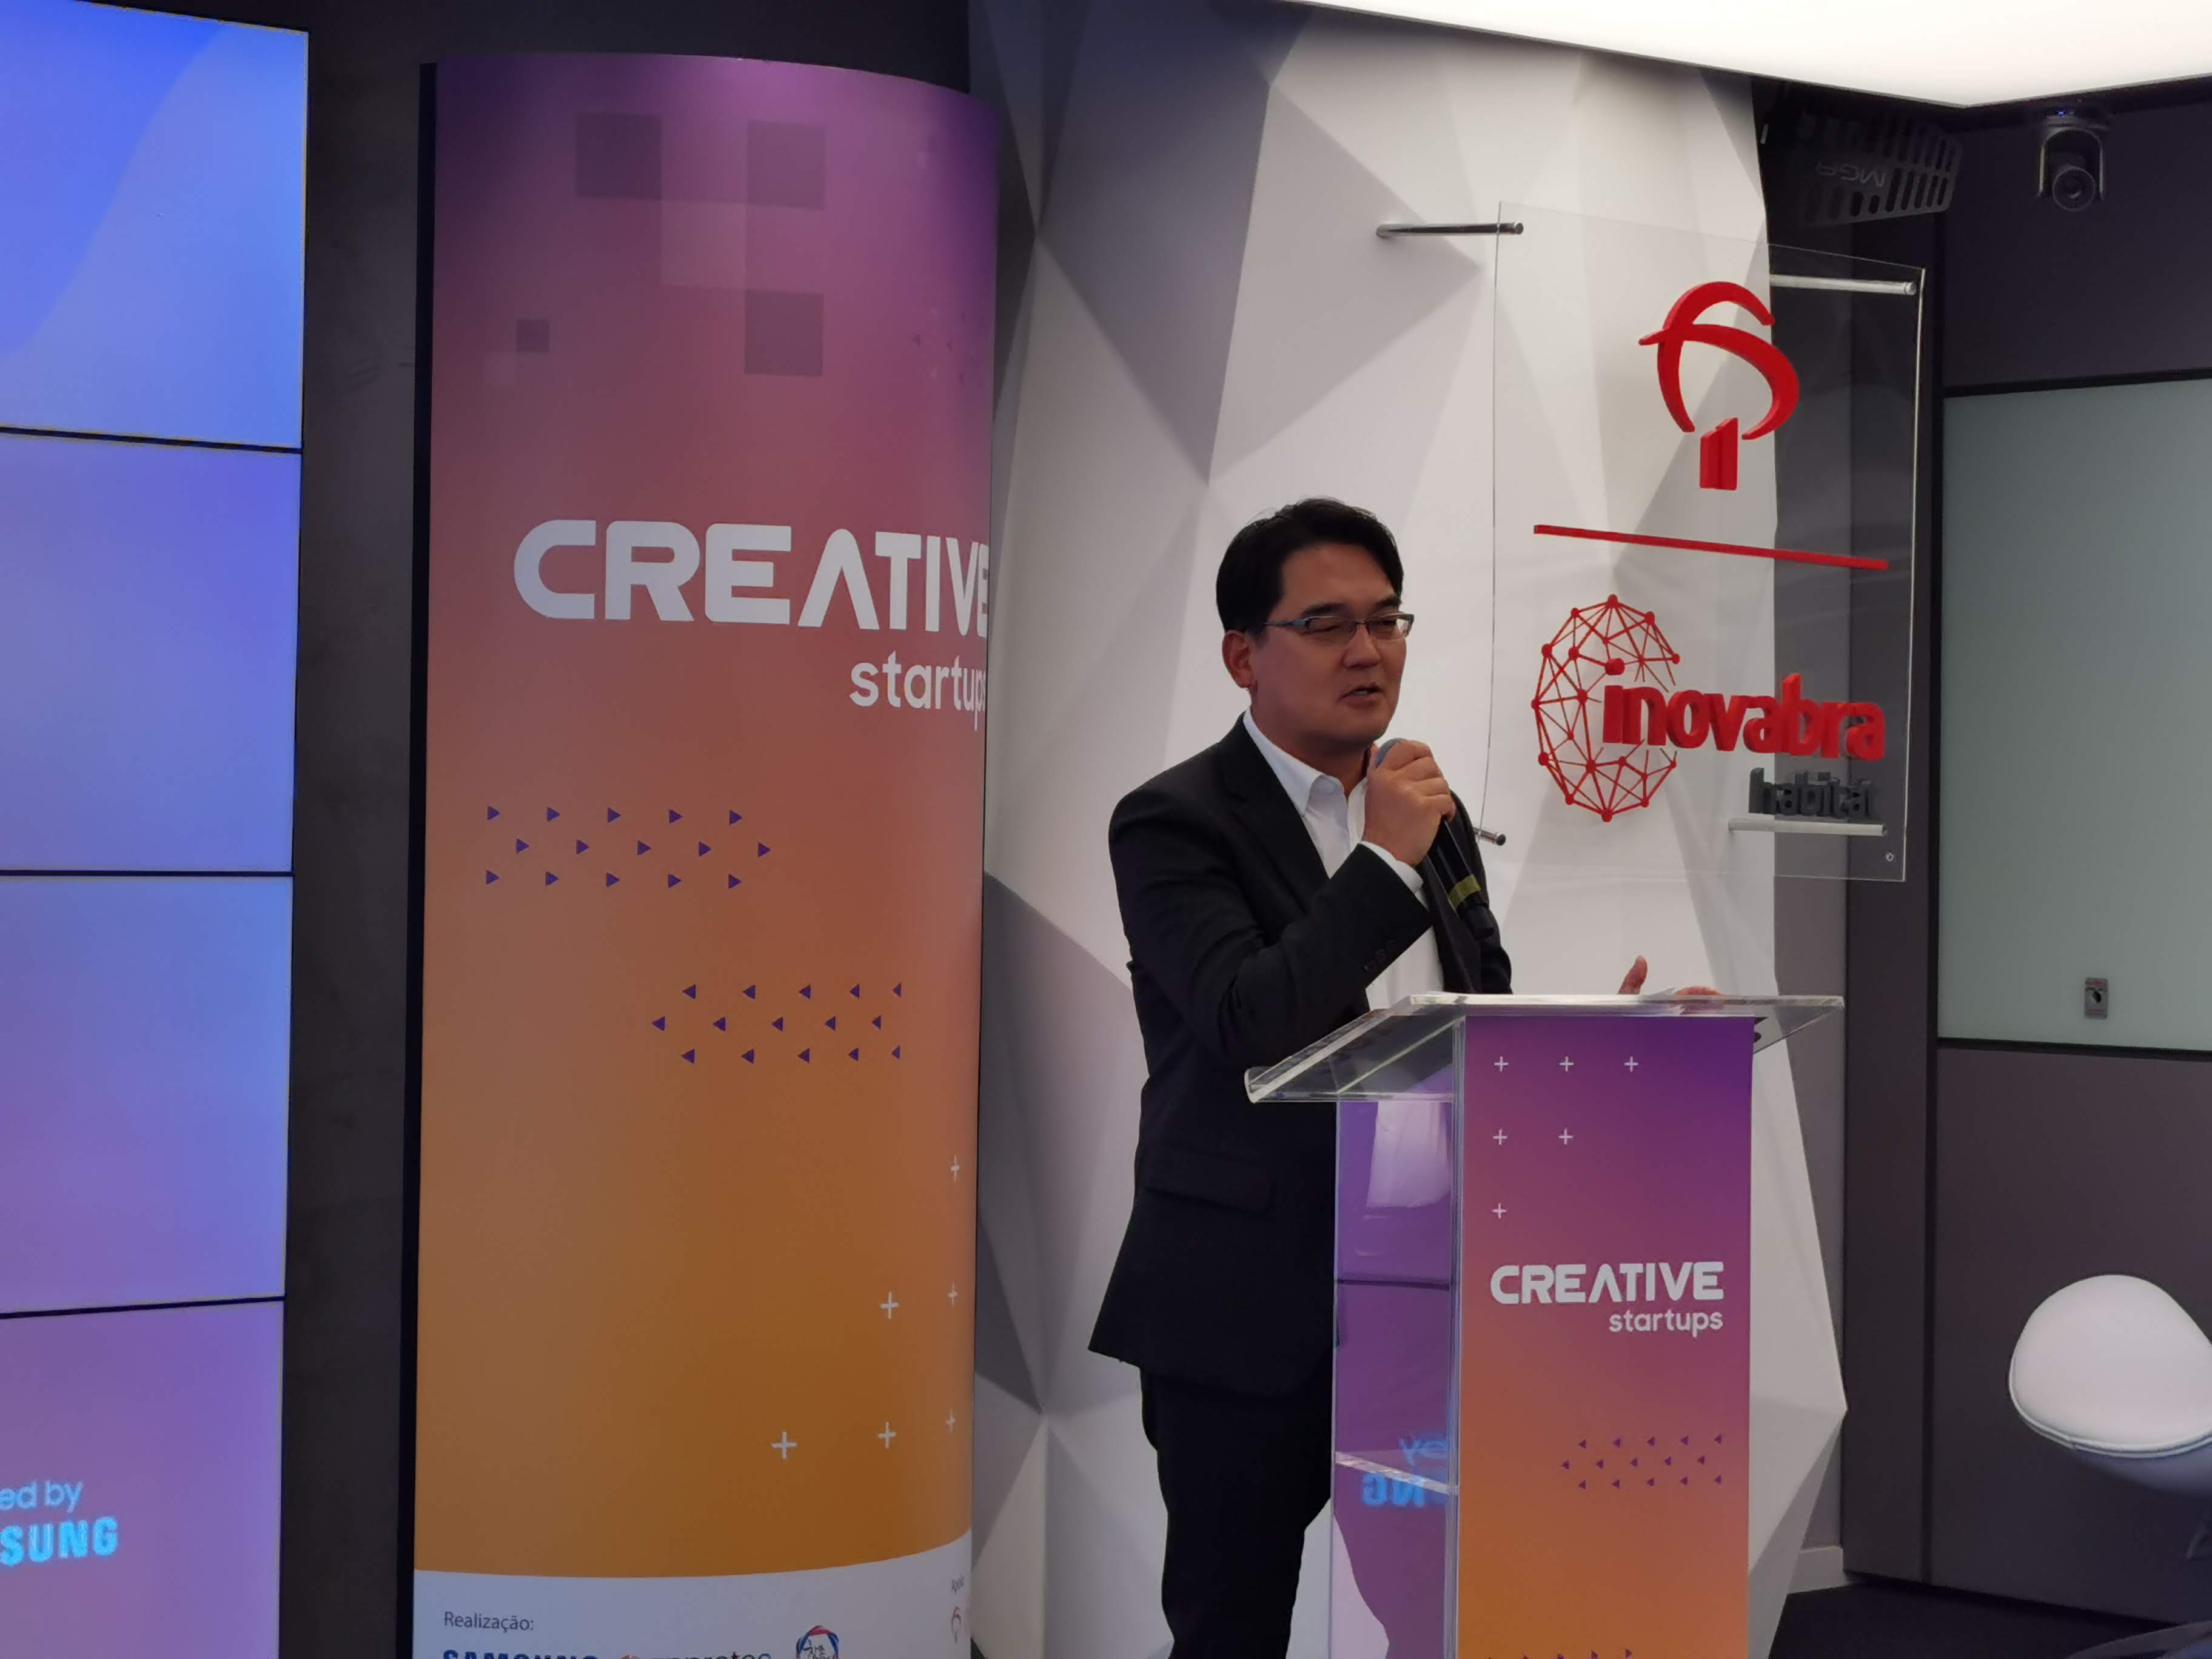 Samsung Creative Startups | 12 startups foram selecionadas e as soluções apresentadas vão surpreender a medicina, a educação e o agronegócio